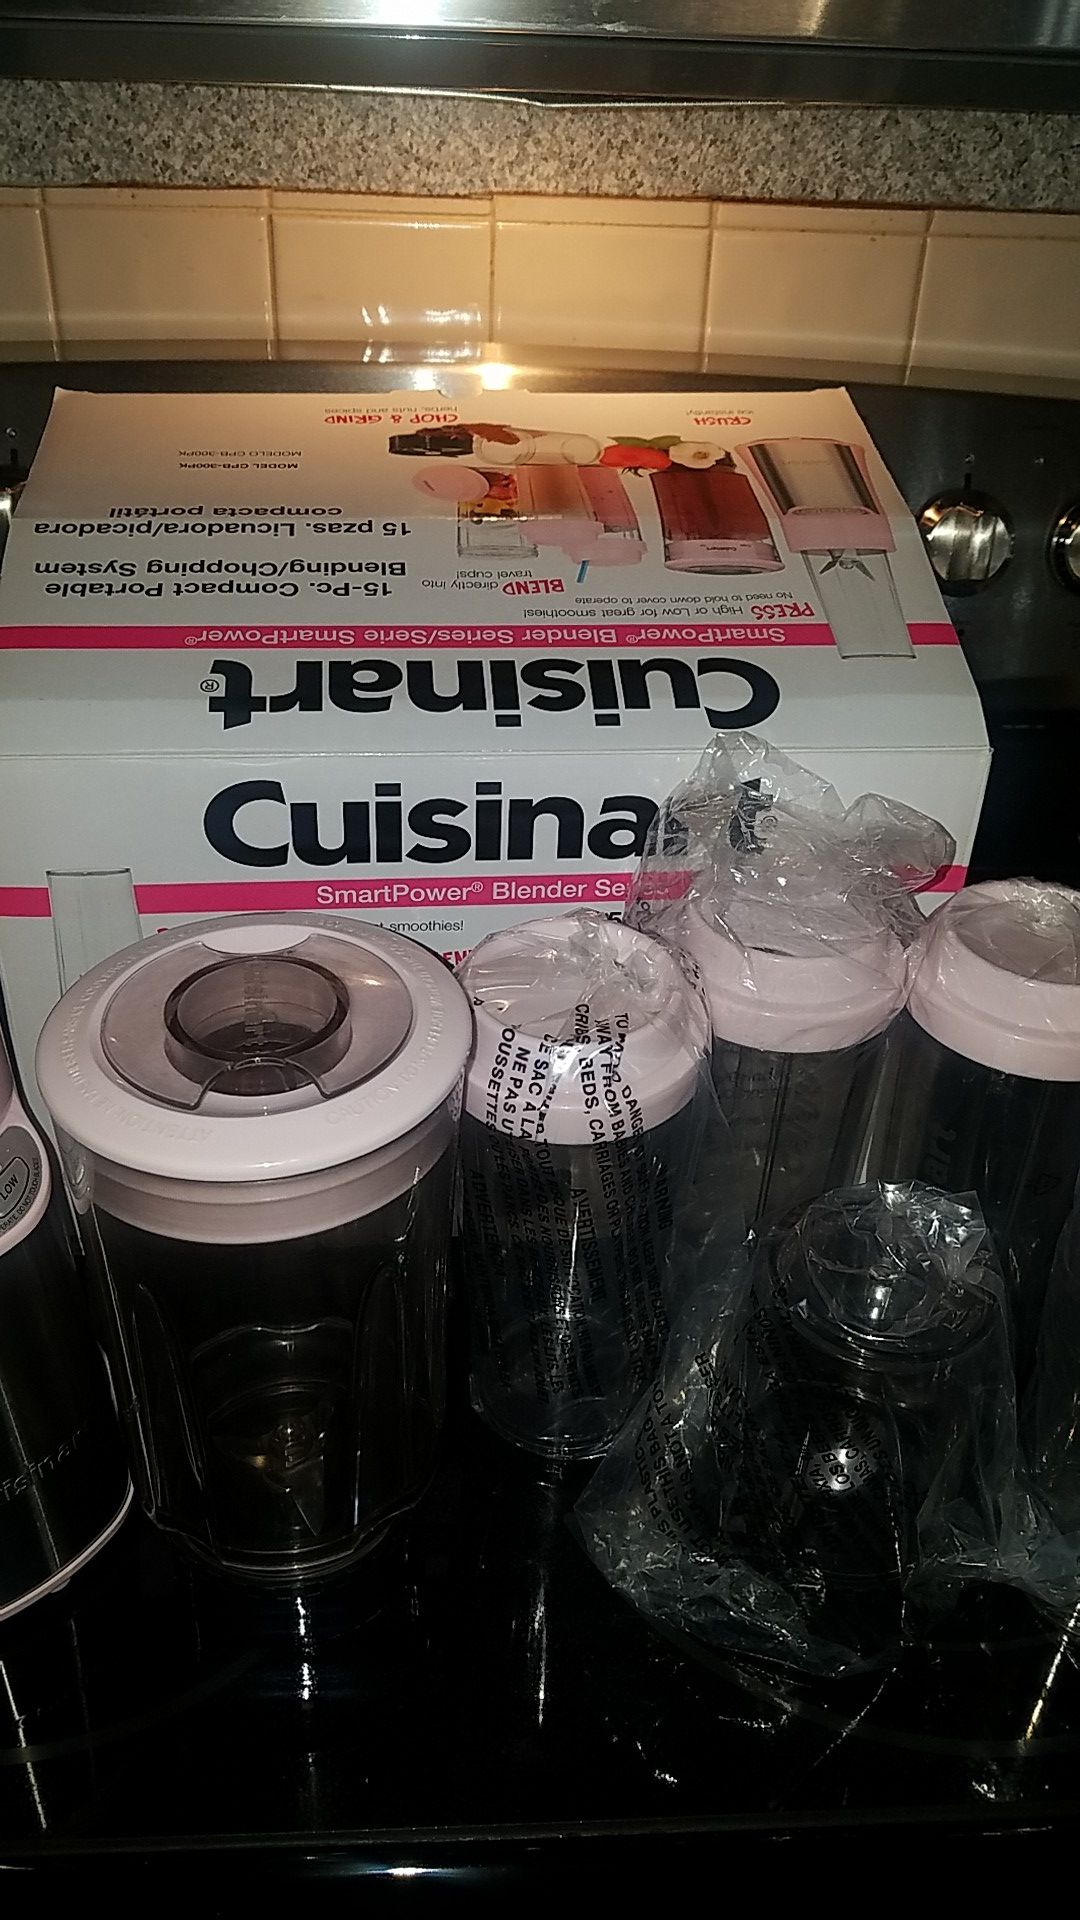 Limited Edition Cuisinart Pink Blender Set